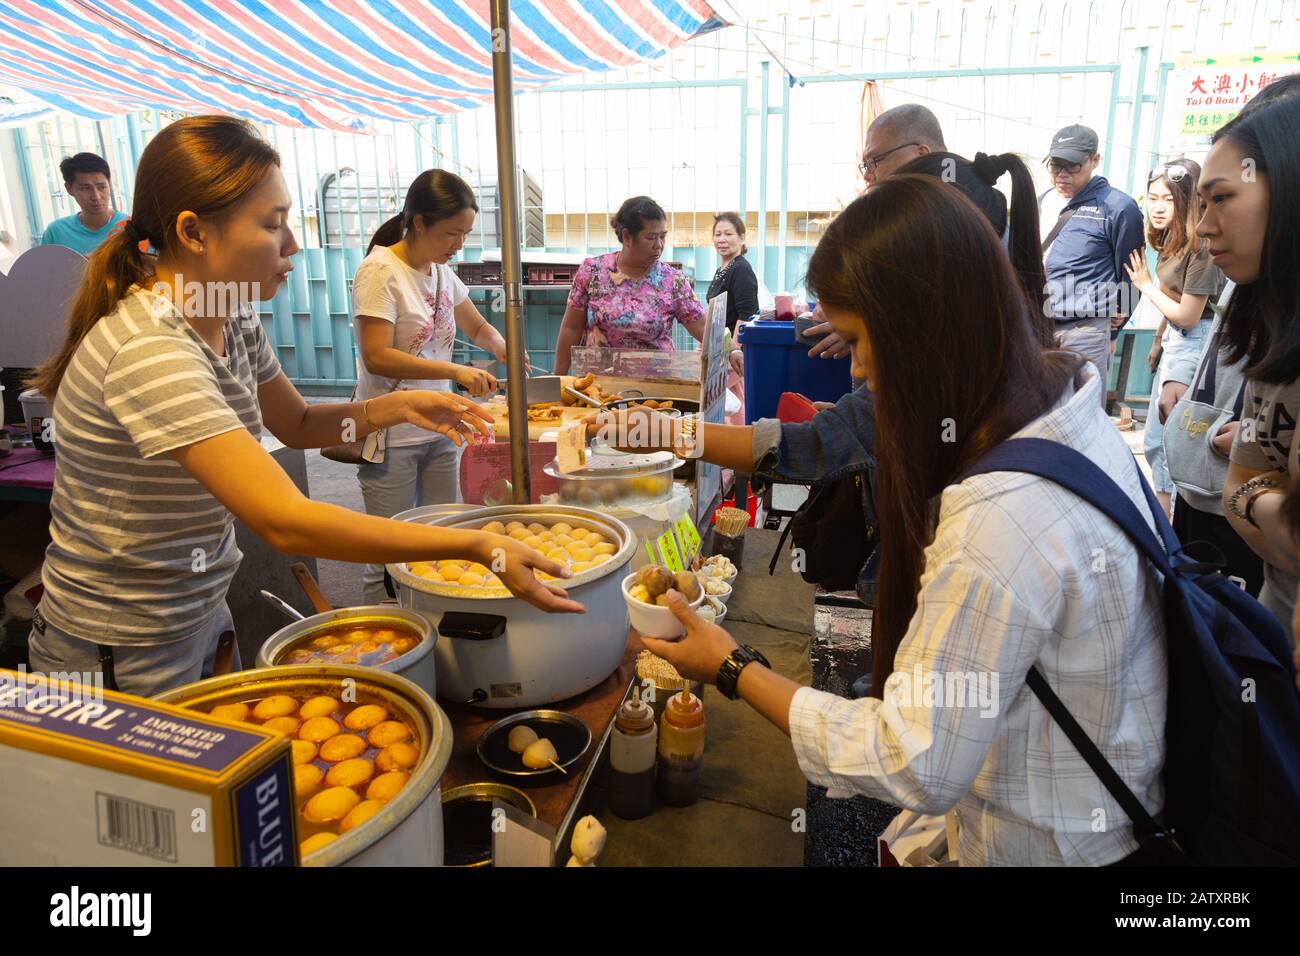 La gente que compra comida de un puesto de comida de la calle; mercado de Tai o, pueblo de pesca de Tai o, isla de Lantau, Hong Kong Asia Foto de stock